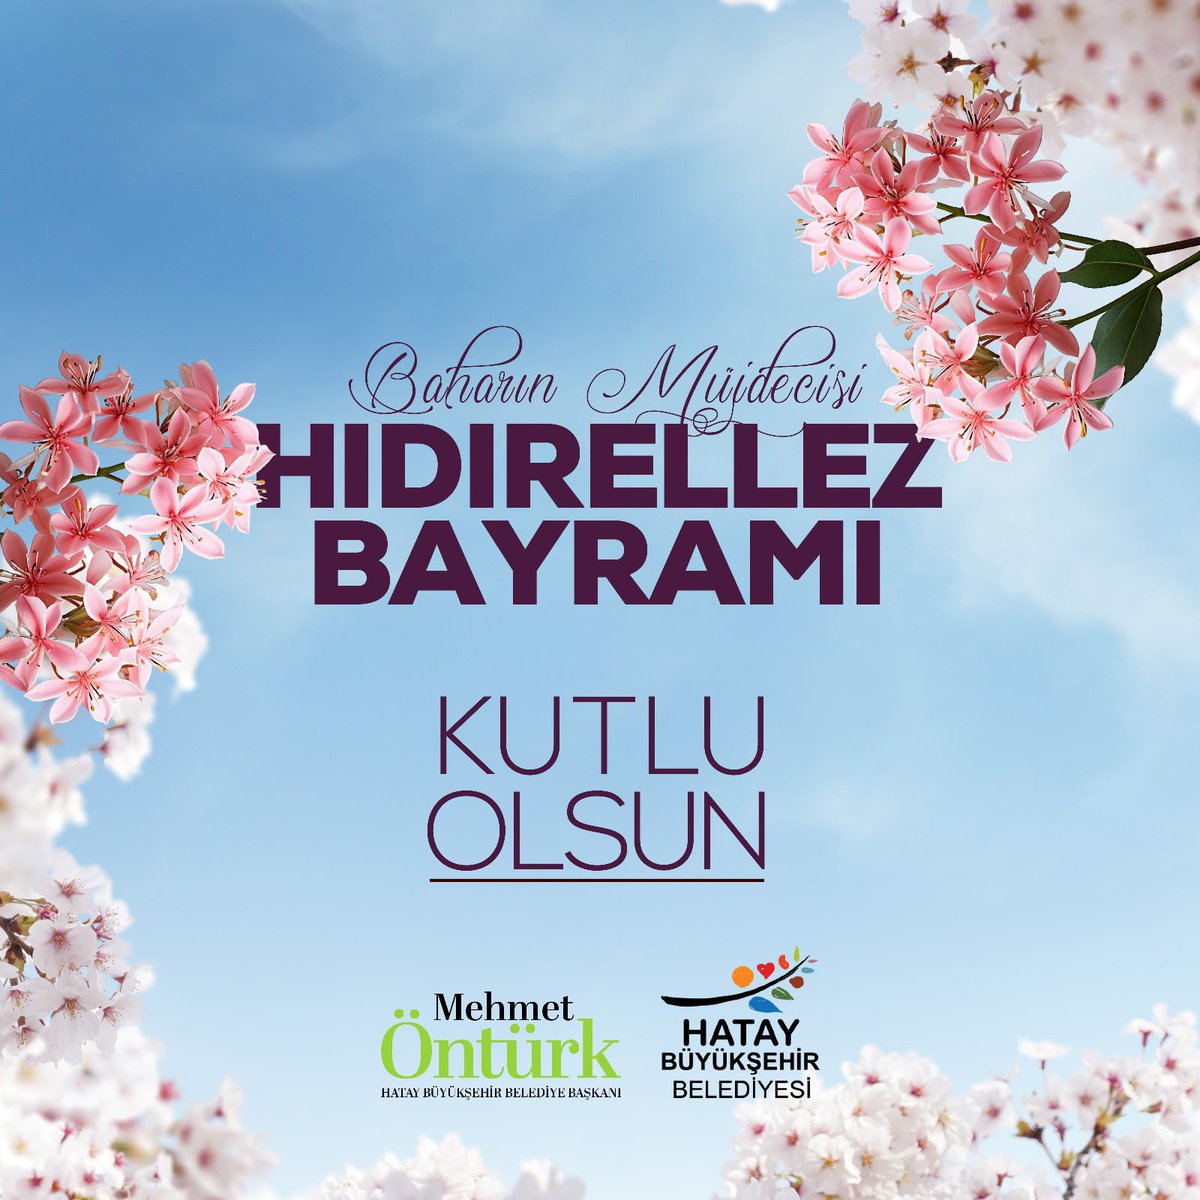 Baharın ve umudun müjdecisi #Hıdırellez’in ülkemize barış, huzur, sağlık ve mutluluk getirmesini diliyorum.

#Hıdırellez Bayramı kutlu olsun.